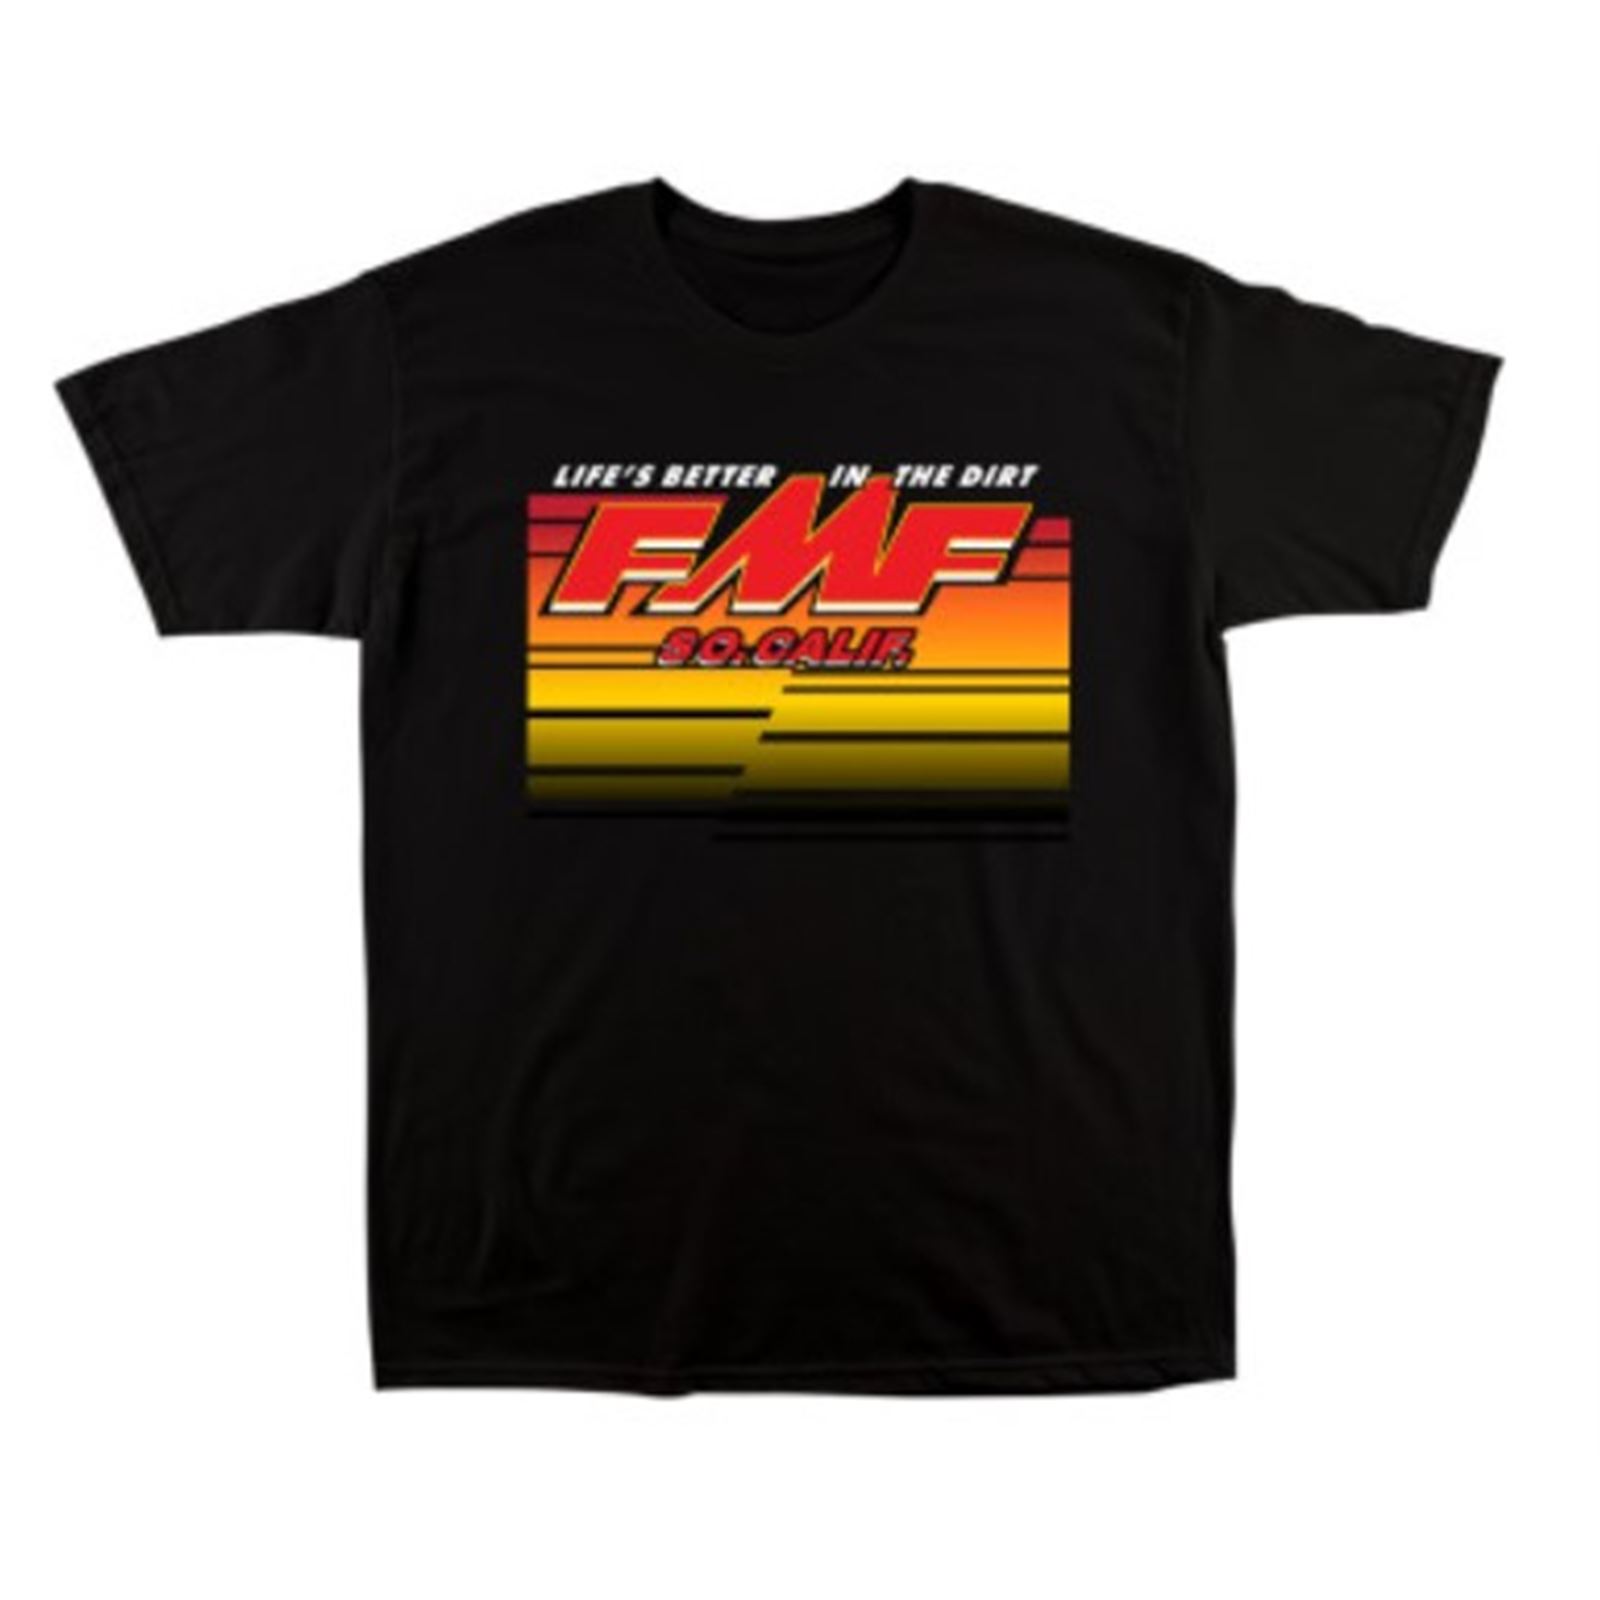 FMF Racing Night Rider Tee Shirt - Black - Small